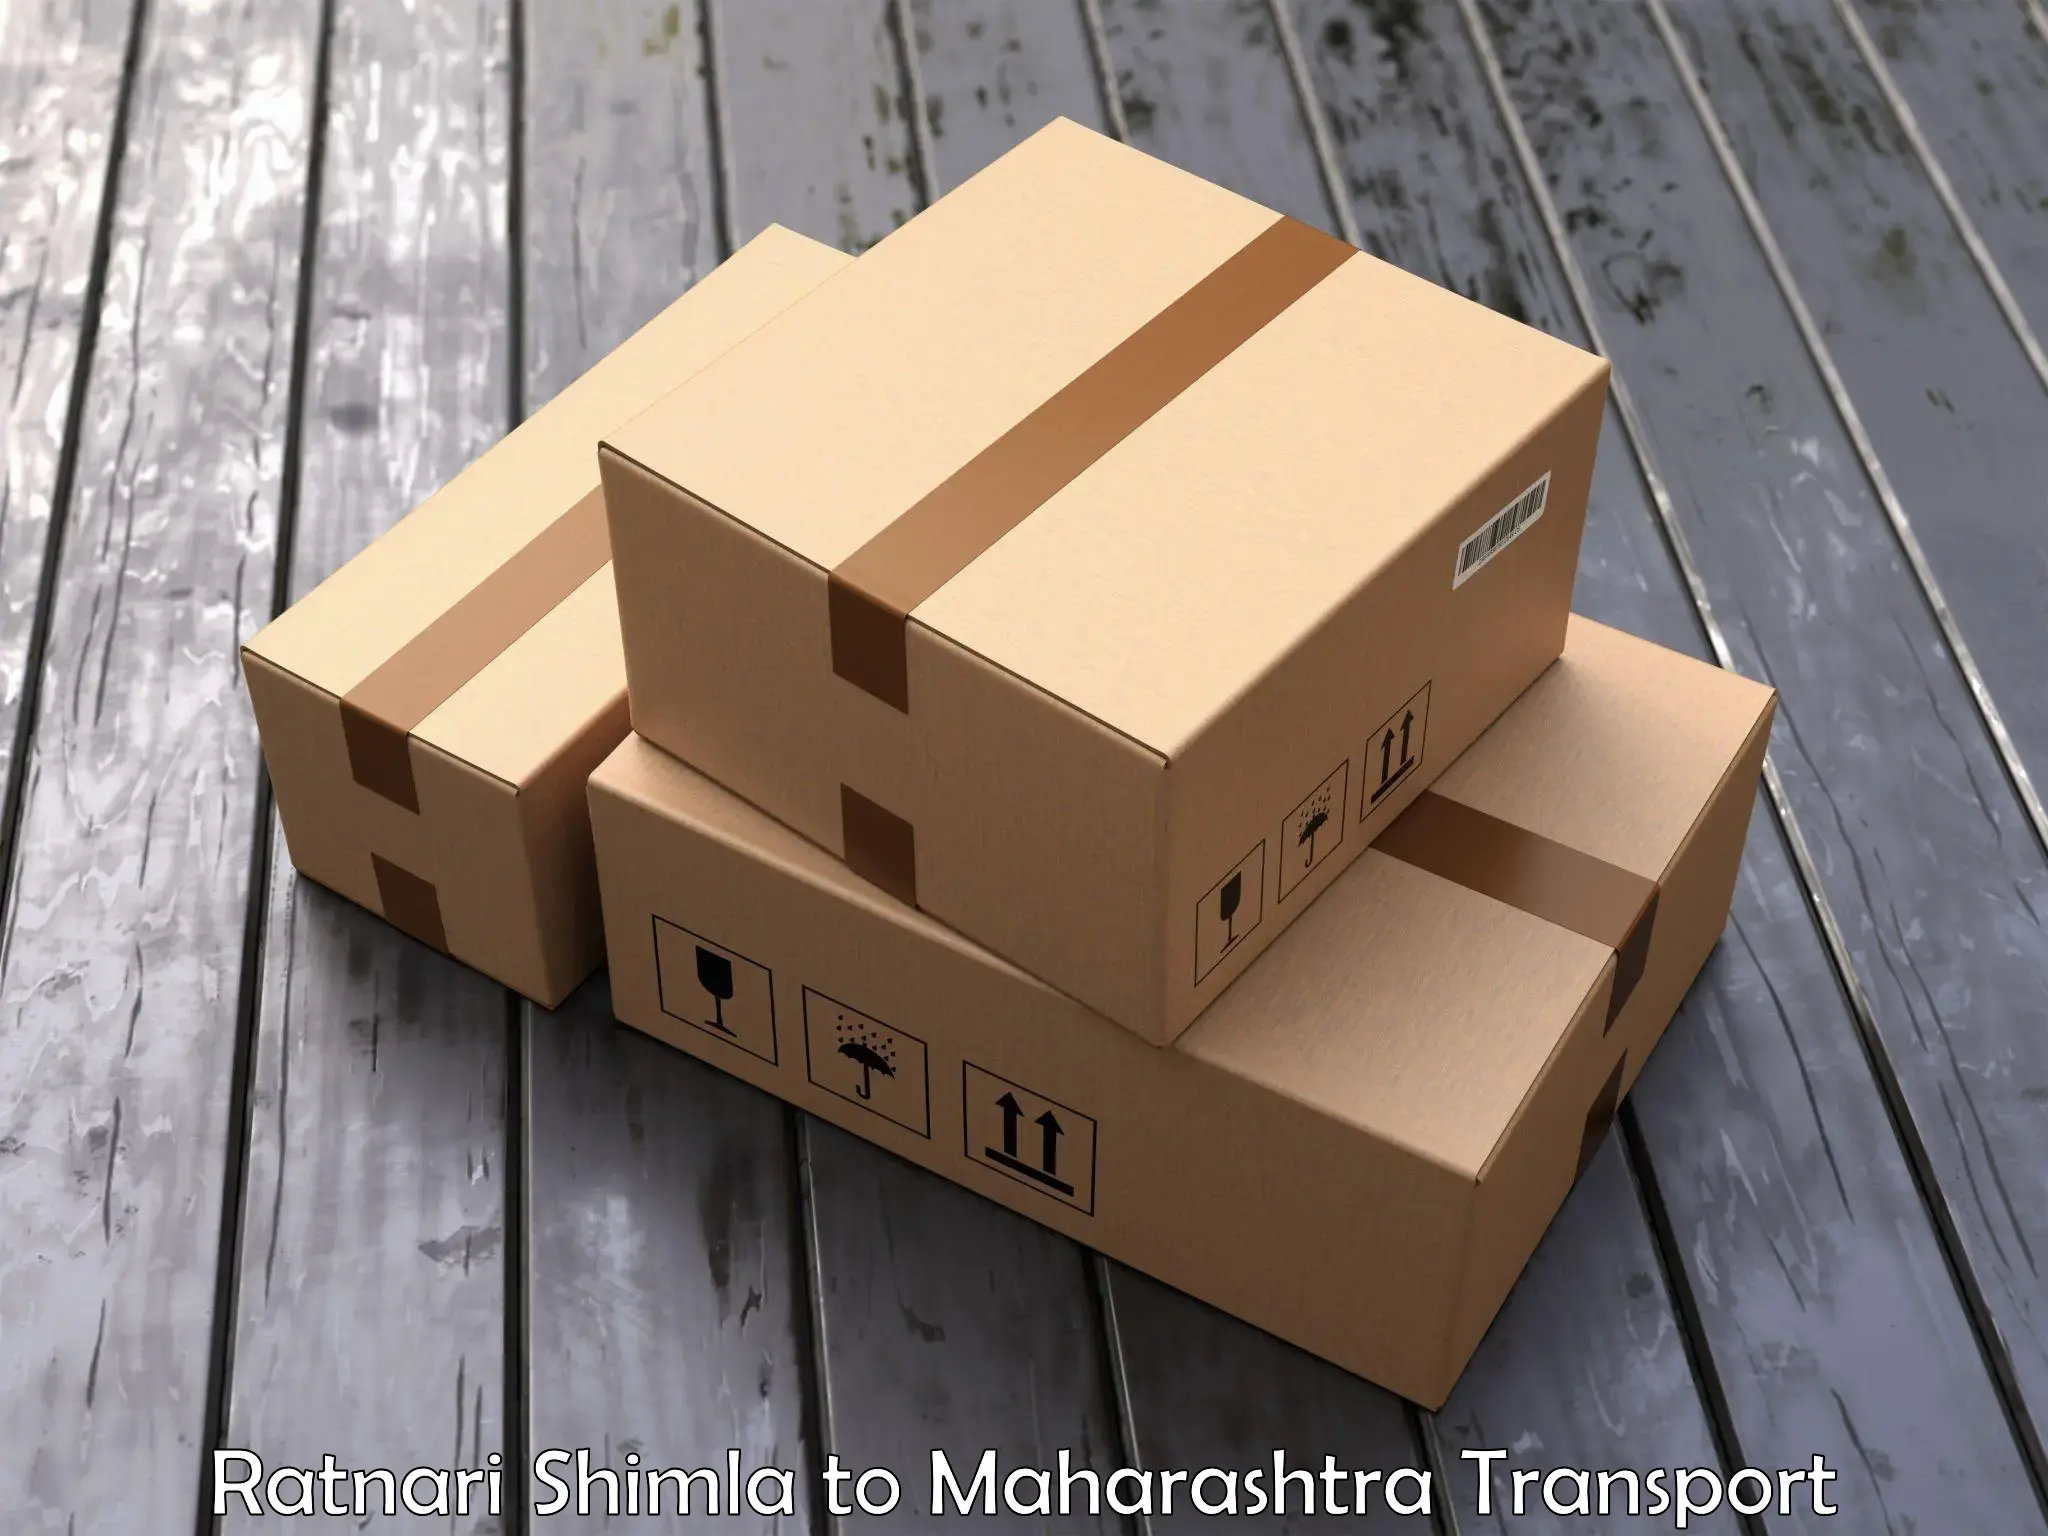 Furniture transport service Ratnari Shimla to Navi Mumbai